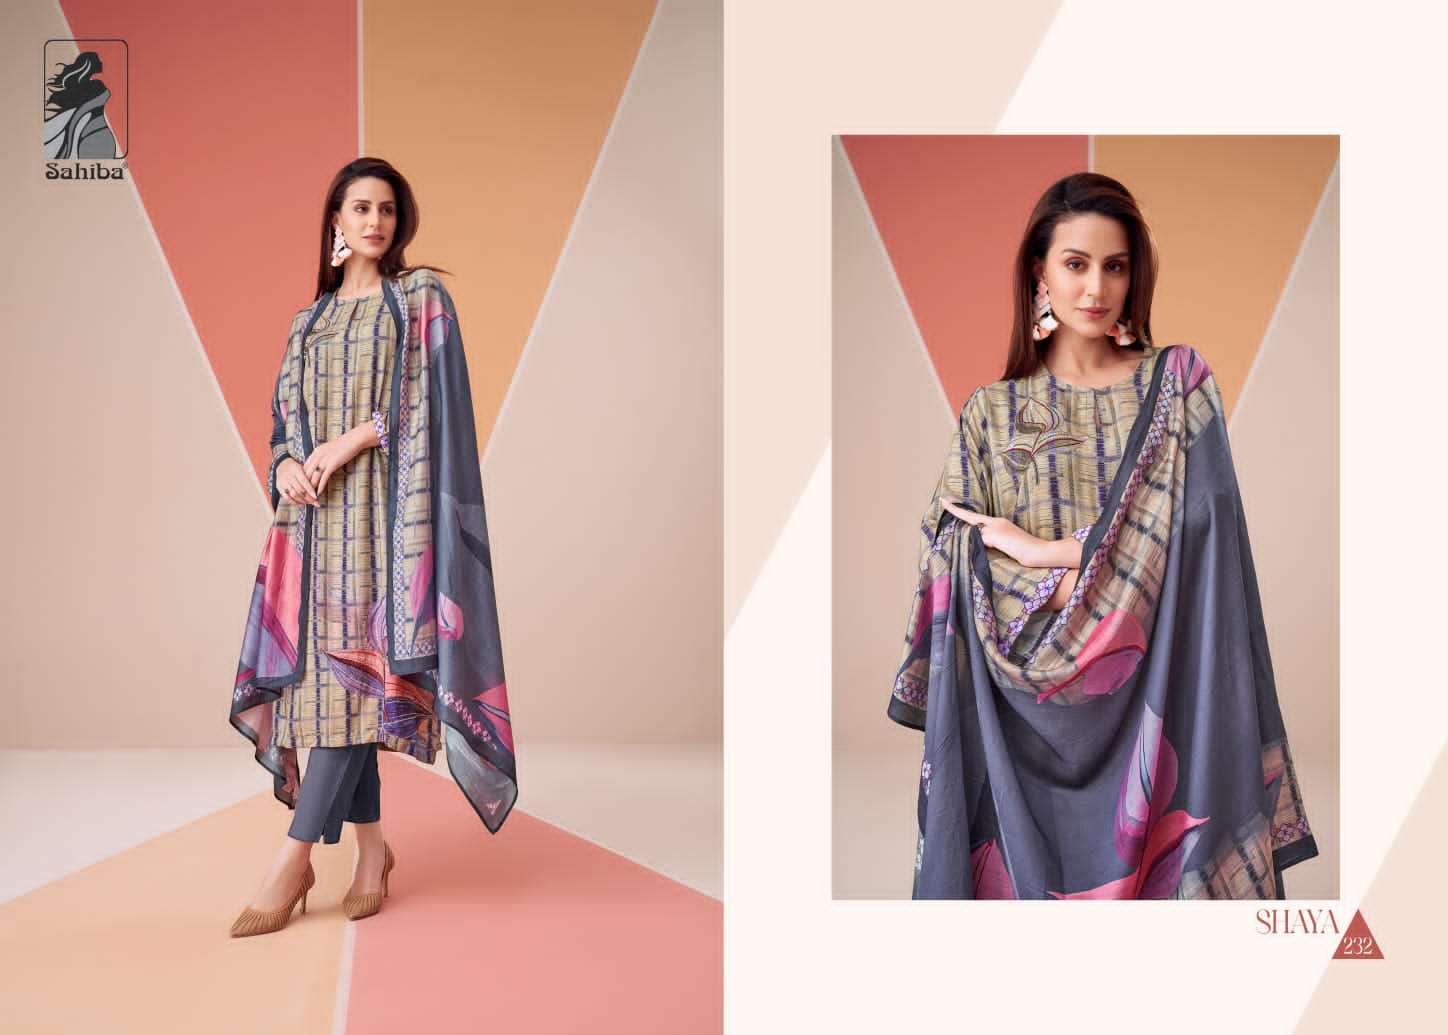 sahiba shaya latest designer fancy pakistani salwar kameez wholesaler surat gujarat